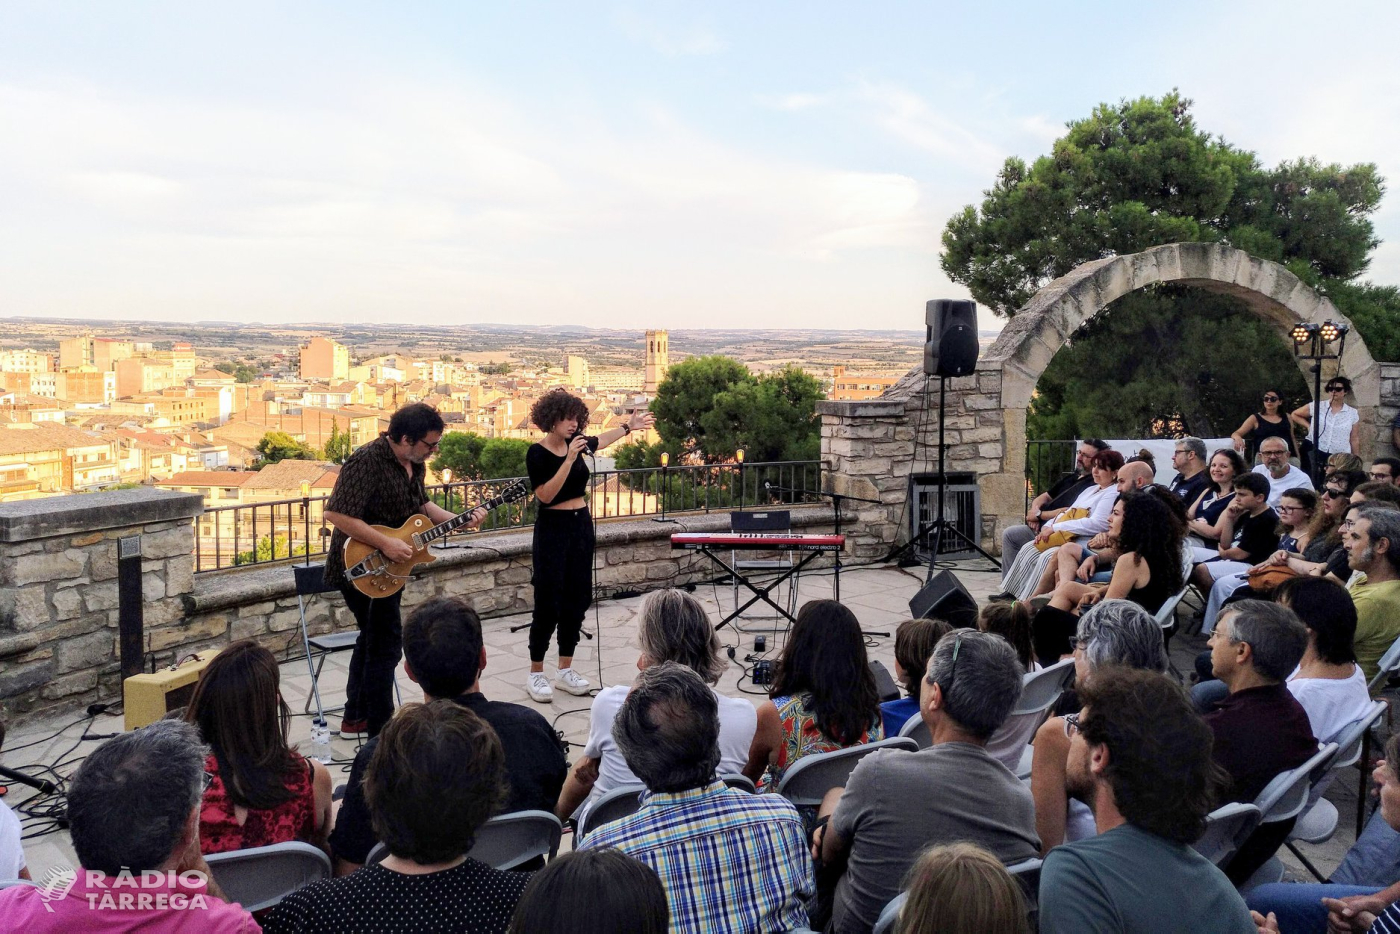 La cantant Paula Valls encisa el públic en el primer concert de “Terrats en Cultura” a Tàrrega, celebrat a la miranda del Parc de Sant Eloi